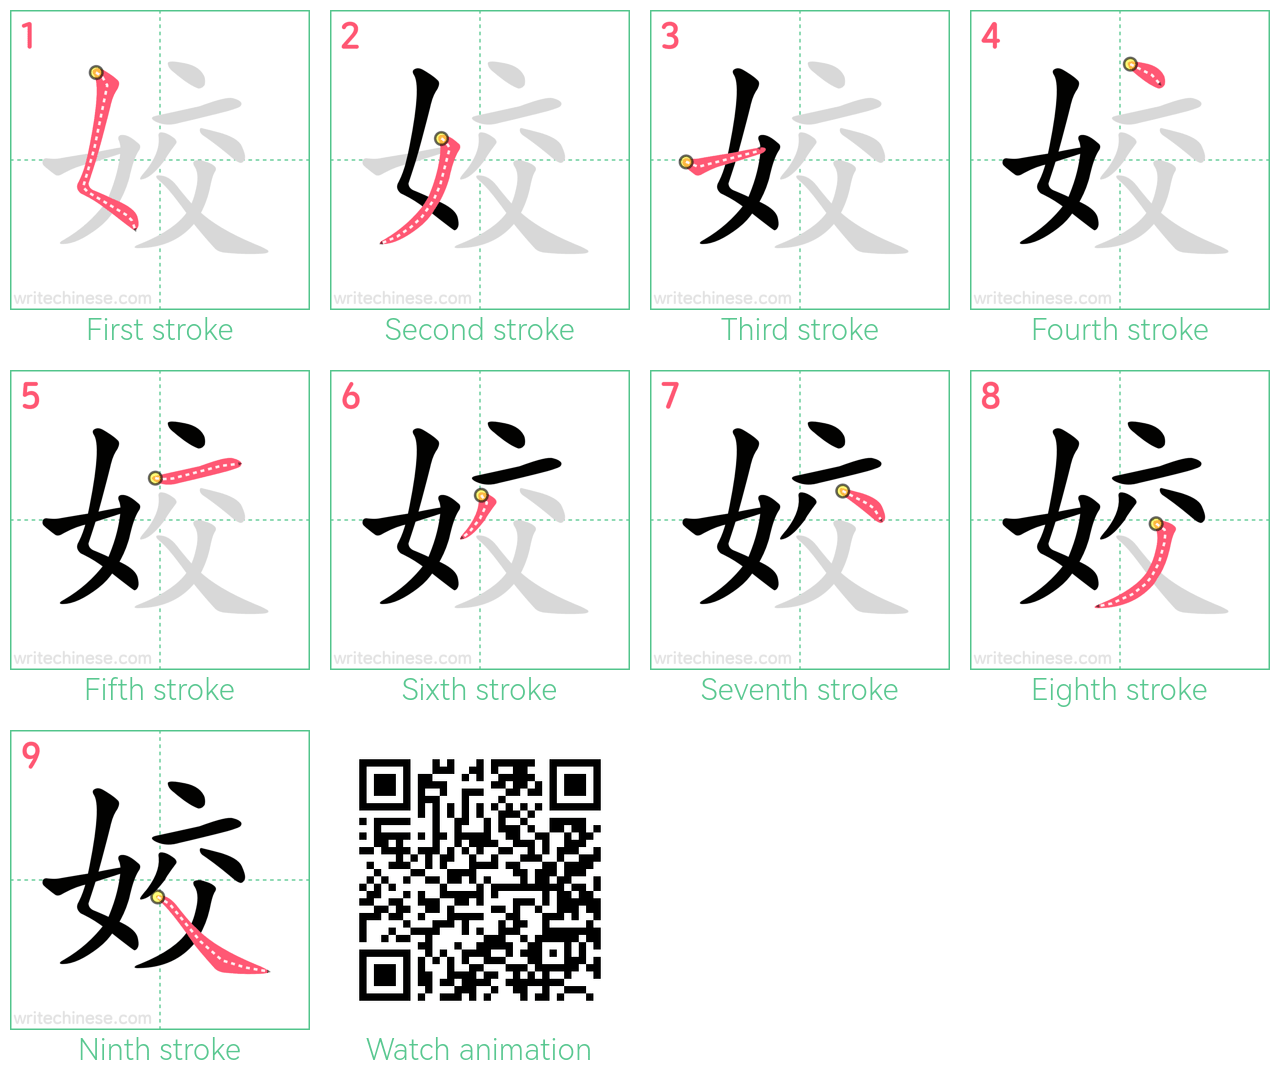 姣 step-by-step stroke order diagrams